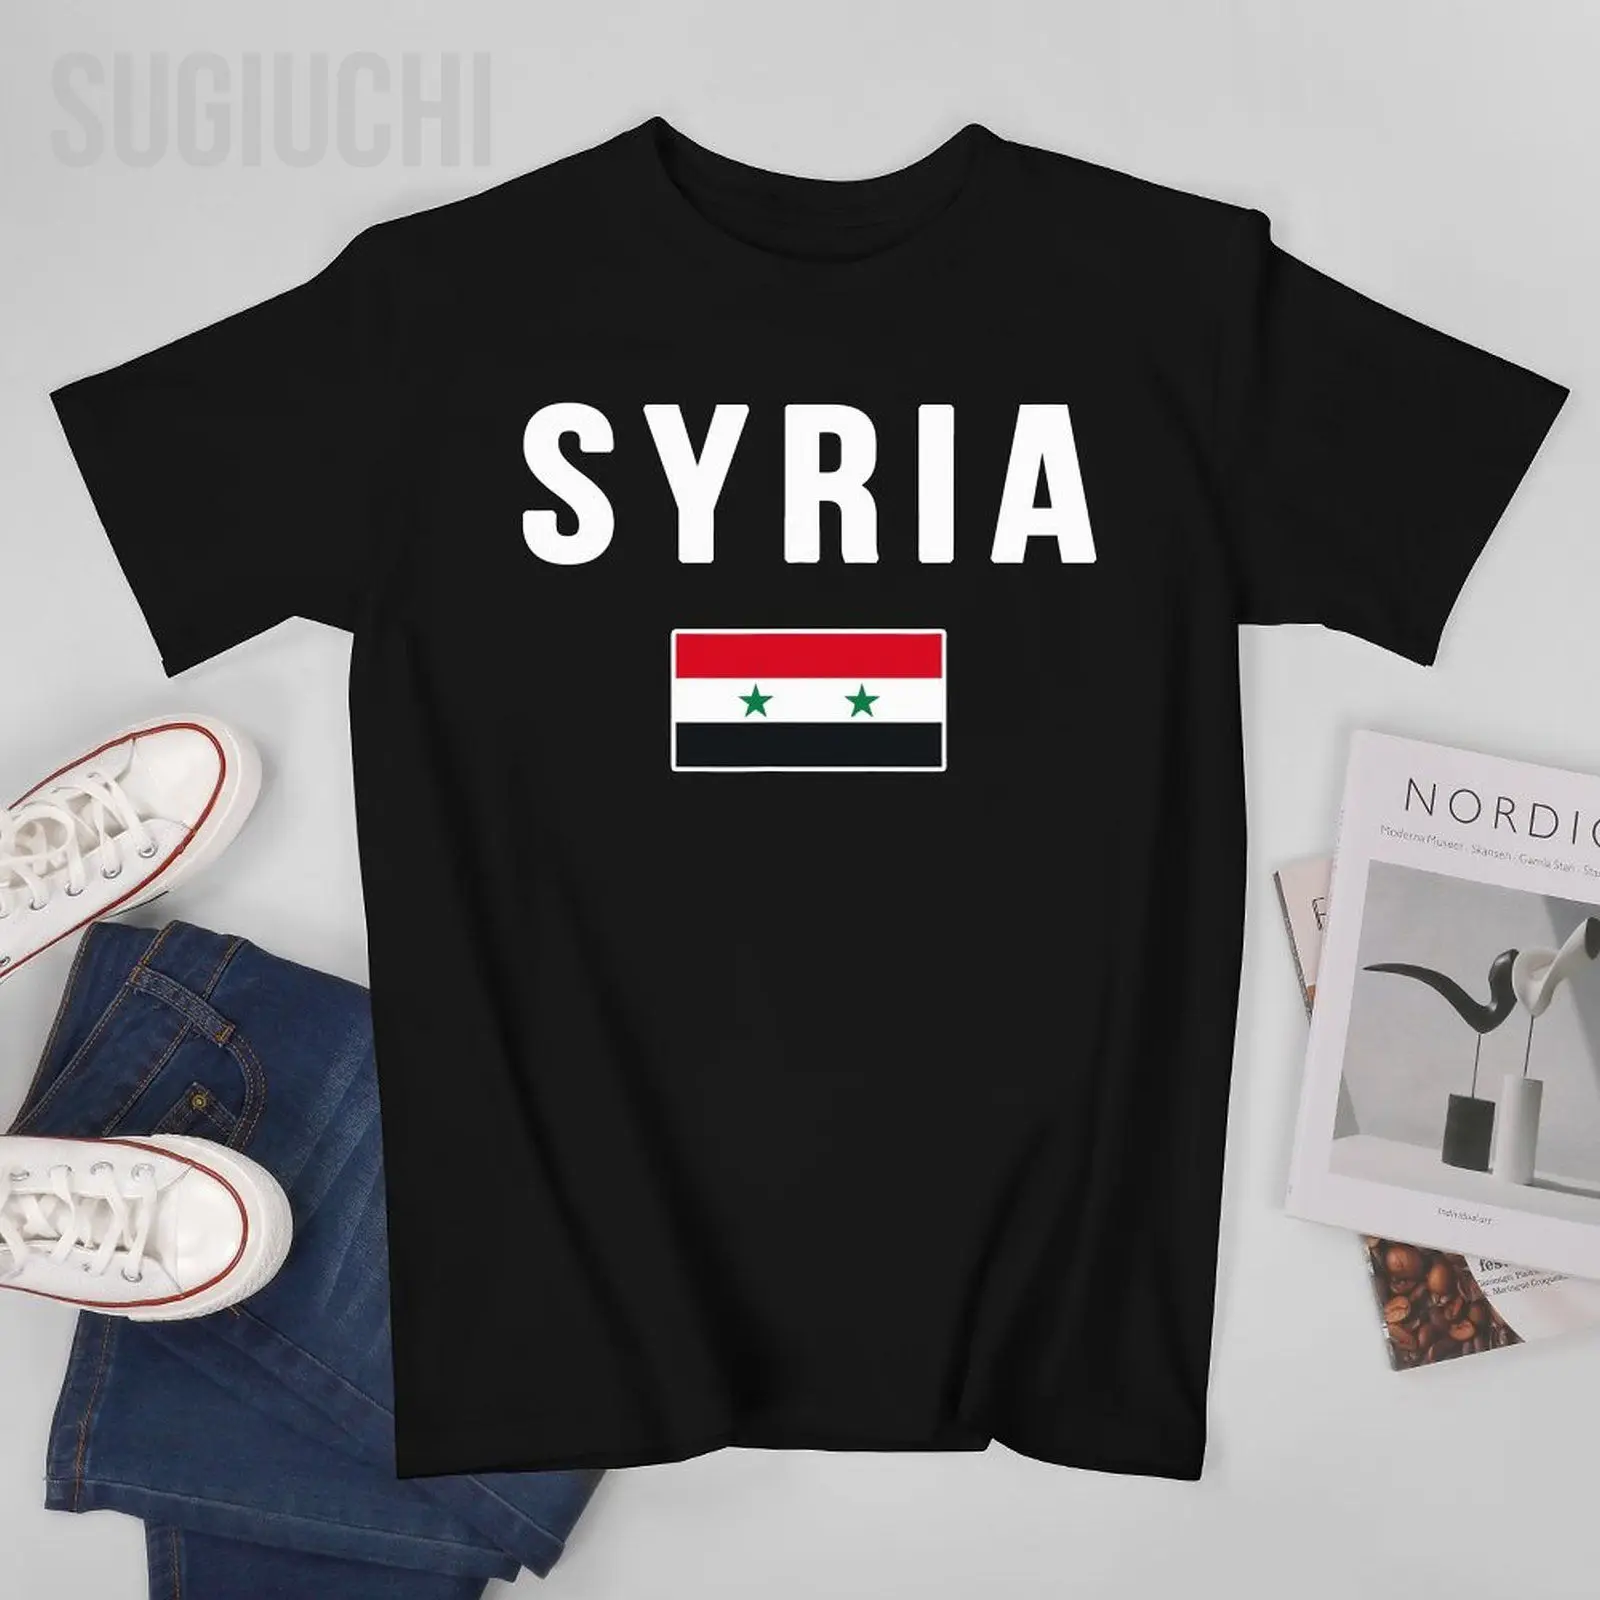 Мужская футболка с сирийским флагом, футболки с круглым вырезом, женские футболки из 100% хлопка для мальчиков, короткая футболка унисекс на все сезоны.